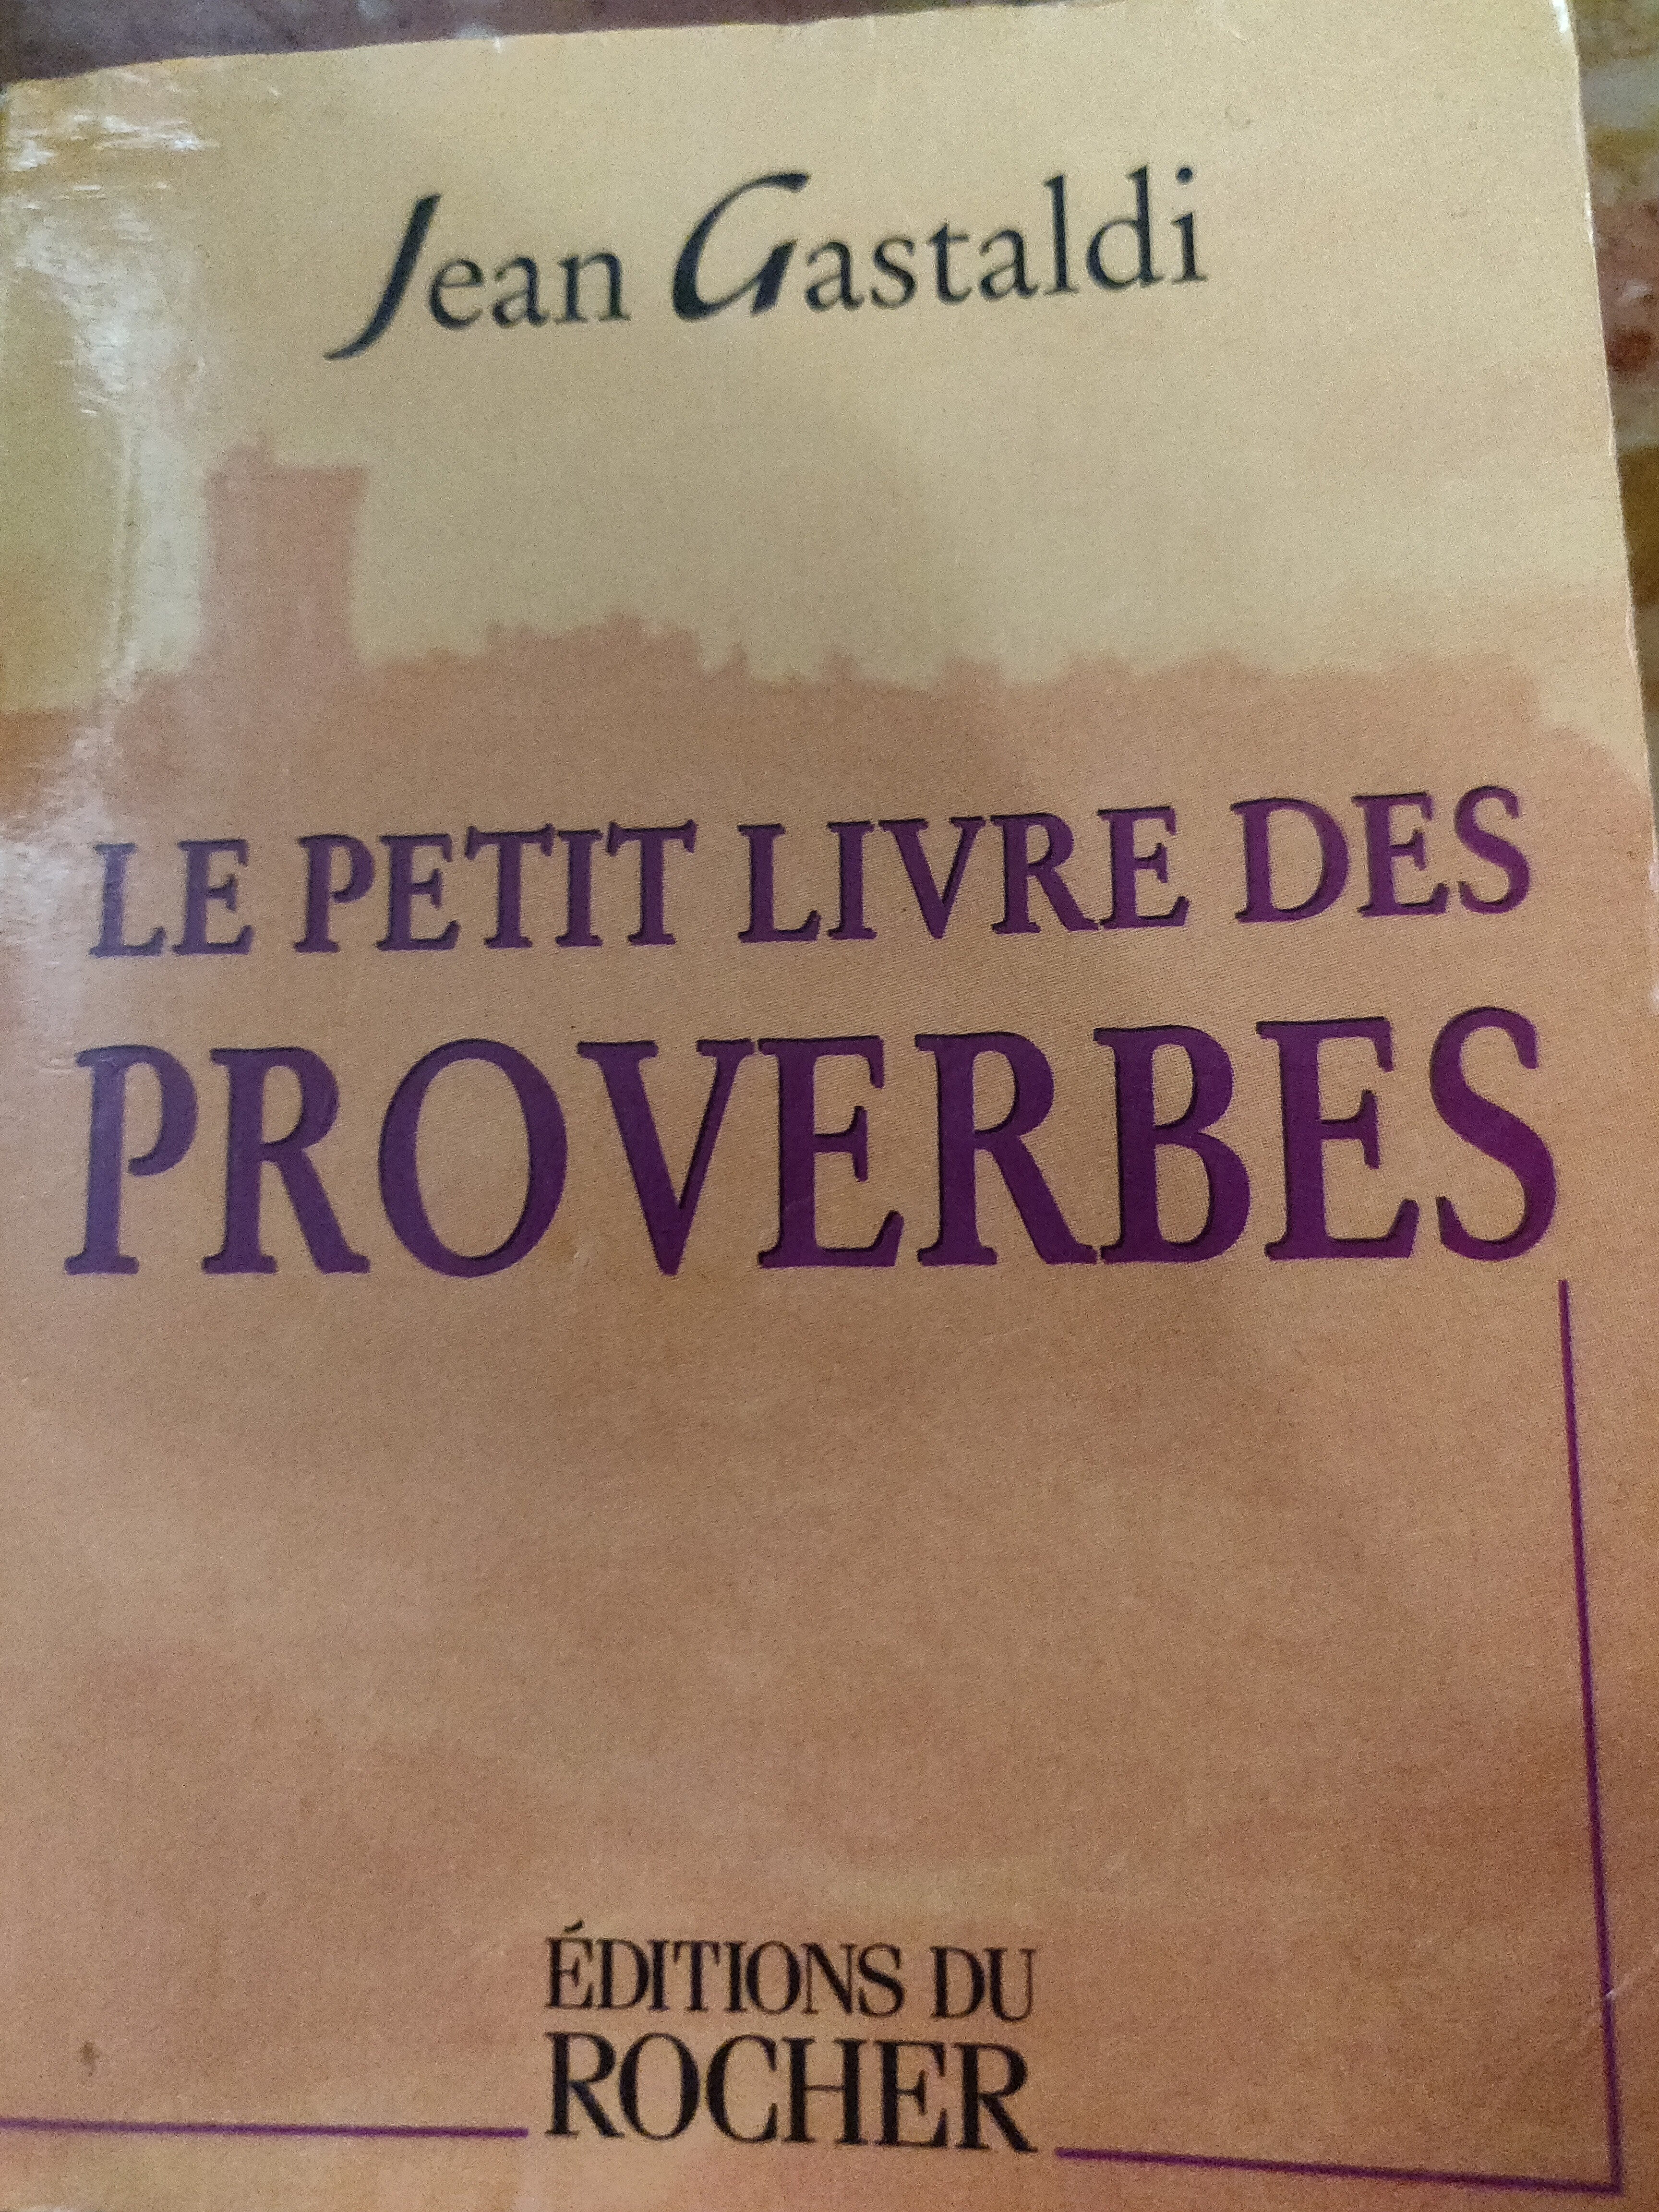 Le Petit Livre des Proverbes - Product - en